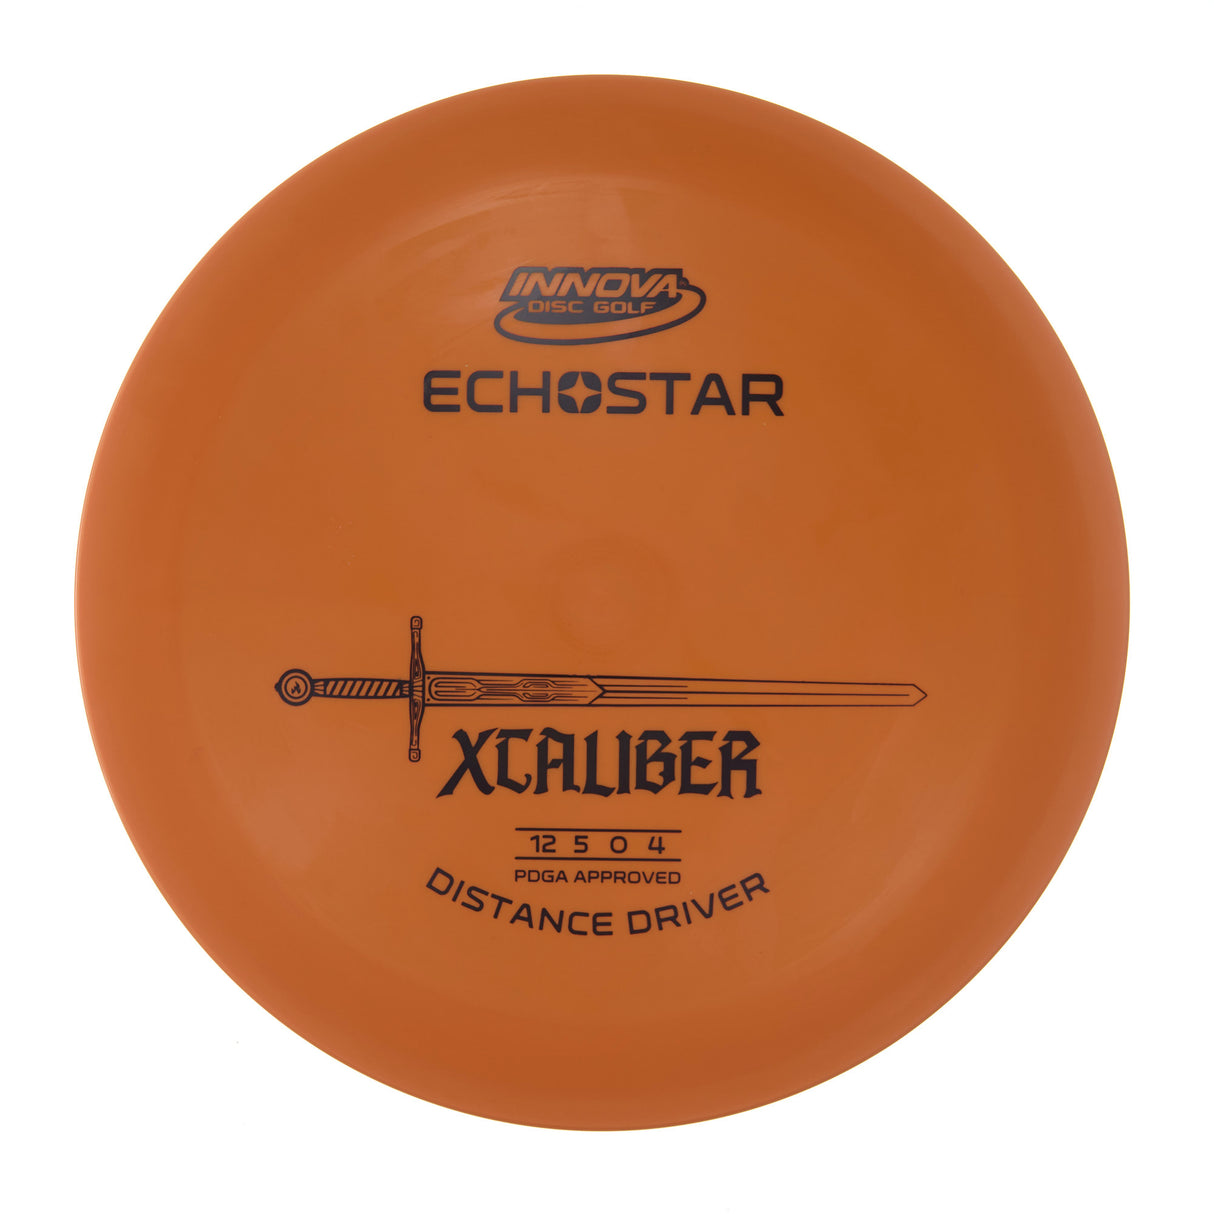 Innova XCaliber - Echo Star  173g | Style 0012